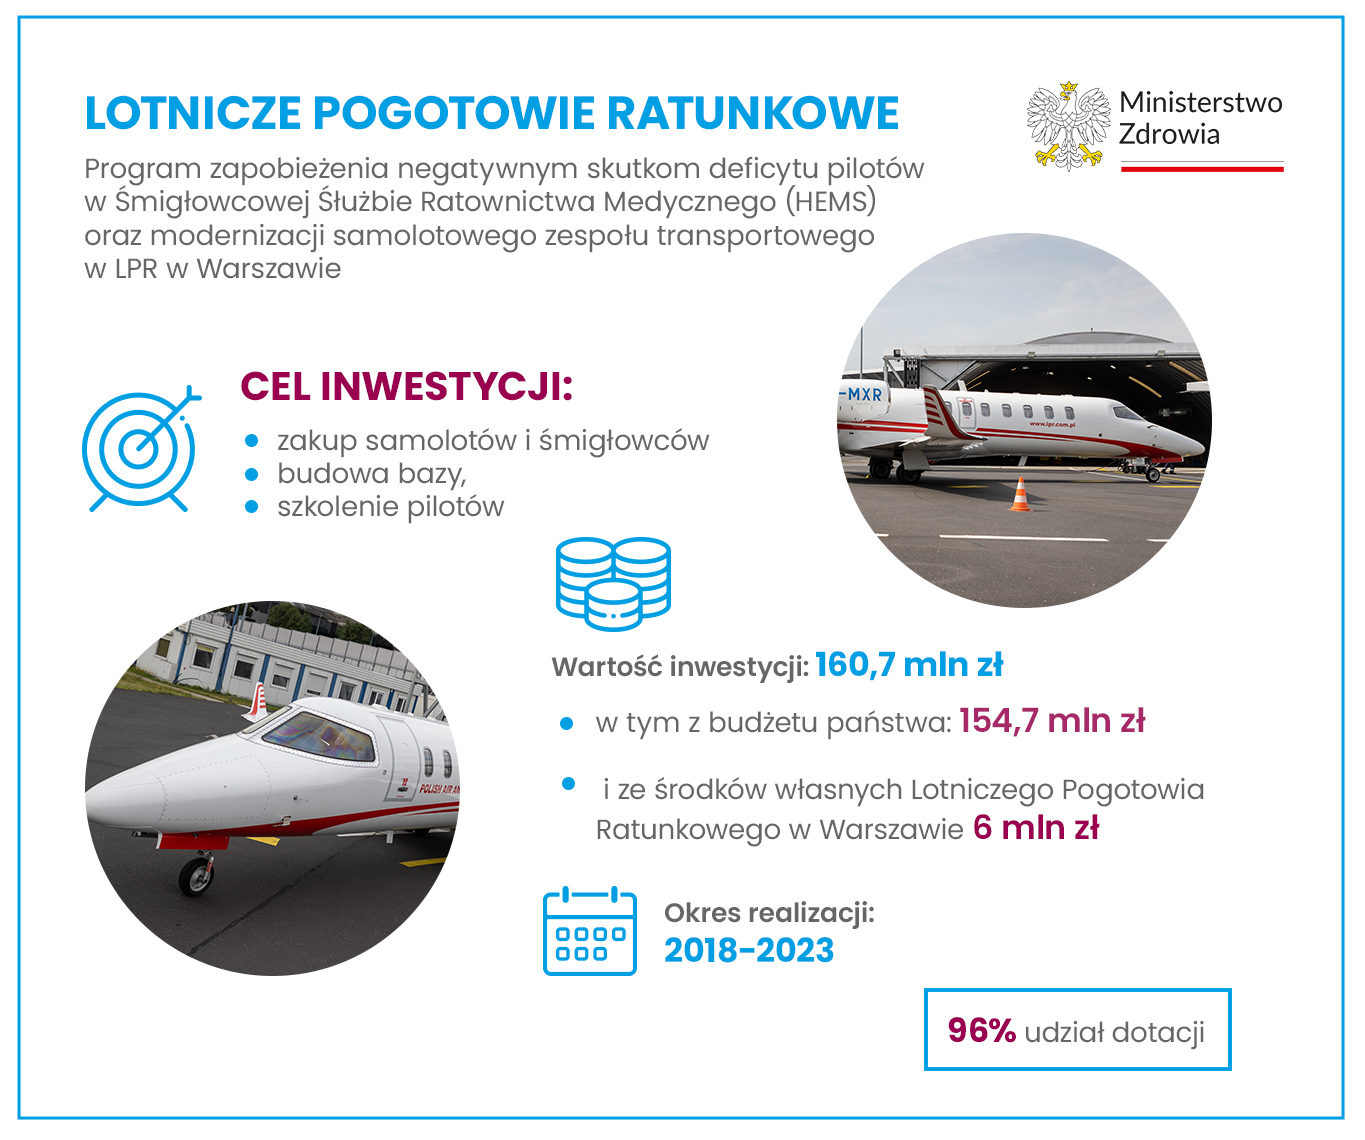 Program zapobieżenia negatywnym skutkom deficytu pilotów w Śmigłowcowej Służbie Ratownictwa Medycznego (HEMS) oraz modernizacji samolotowego zespołu transportowego w LPR w Warszawie